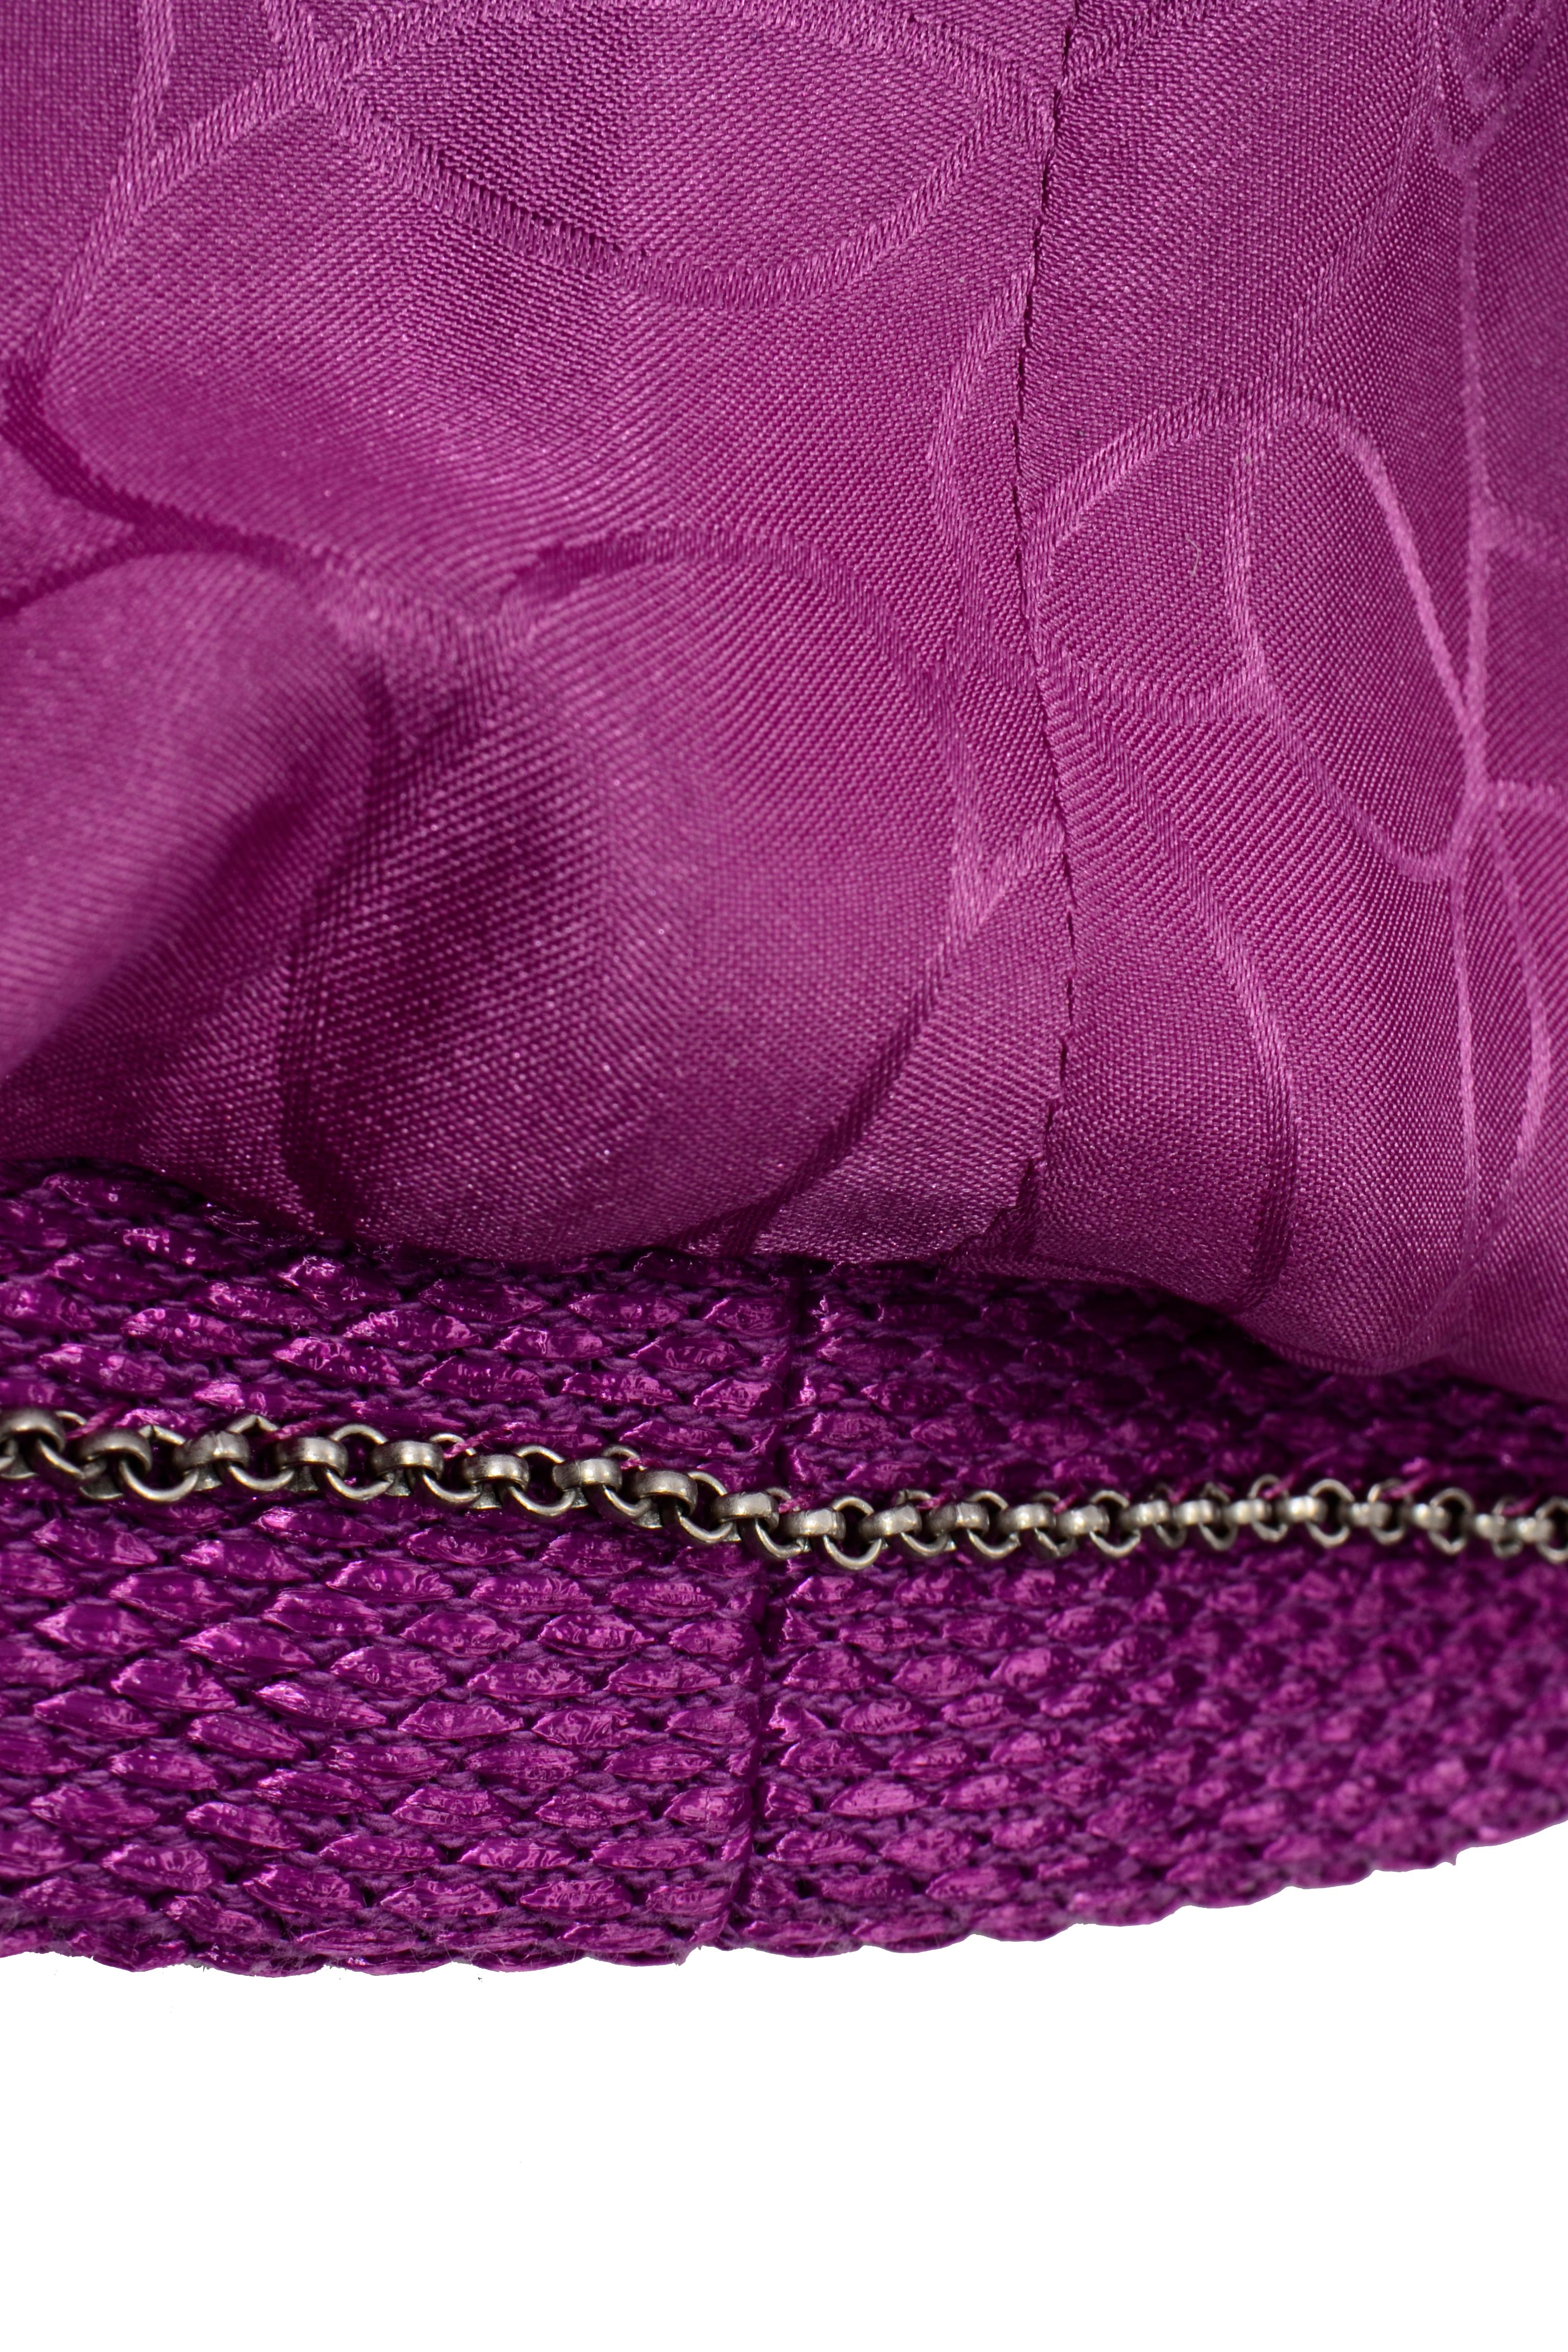 Chanel 2001 Magenta Purple Metallic Cropped Jacket w Asymmetrical Zipper For Sale 3